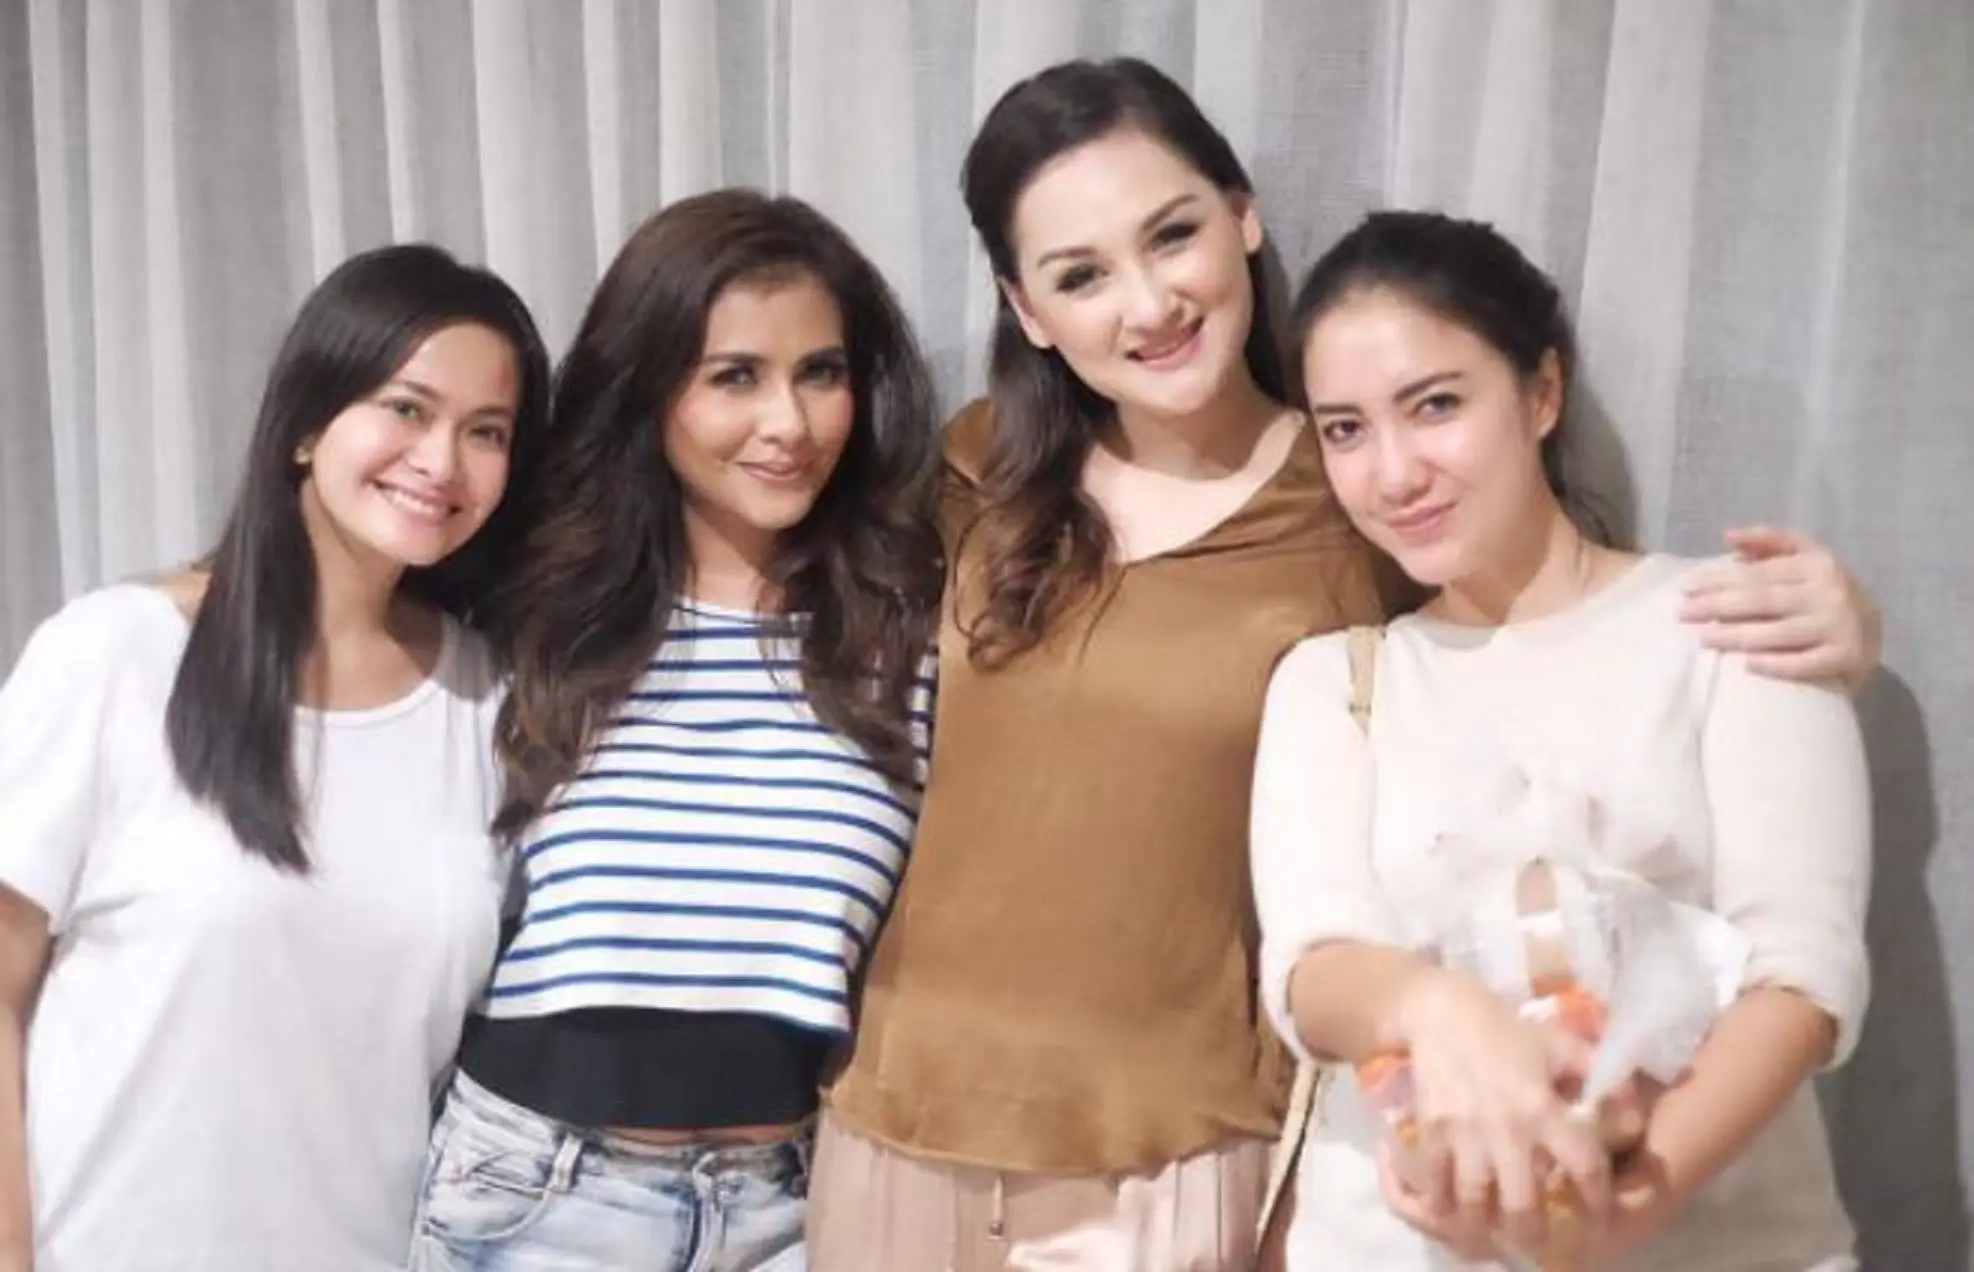 Mona Ratuliu unggah foto bersama Tia Ivanka, Meisya Siregar, dan Ersa Mayori (Instagram/@monaratuliu)